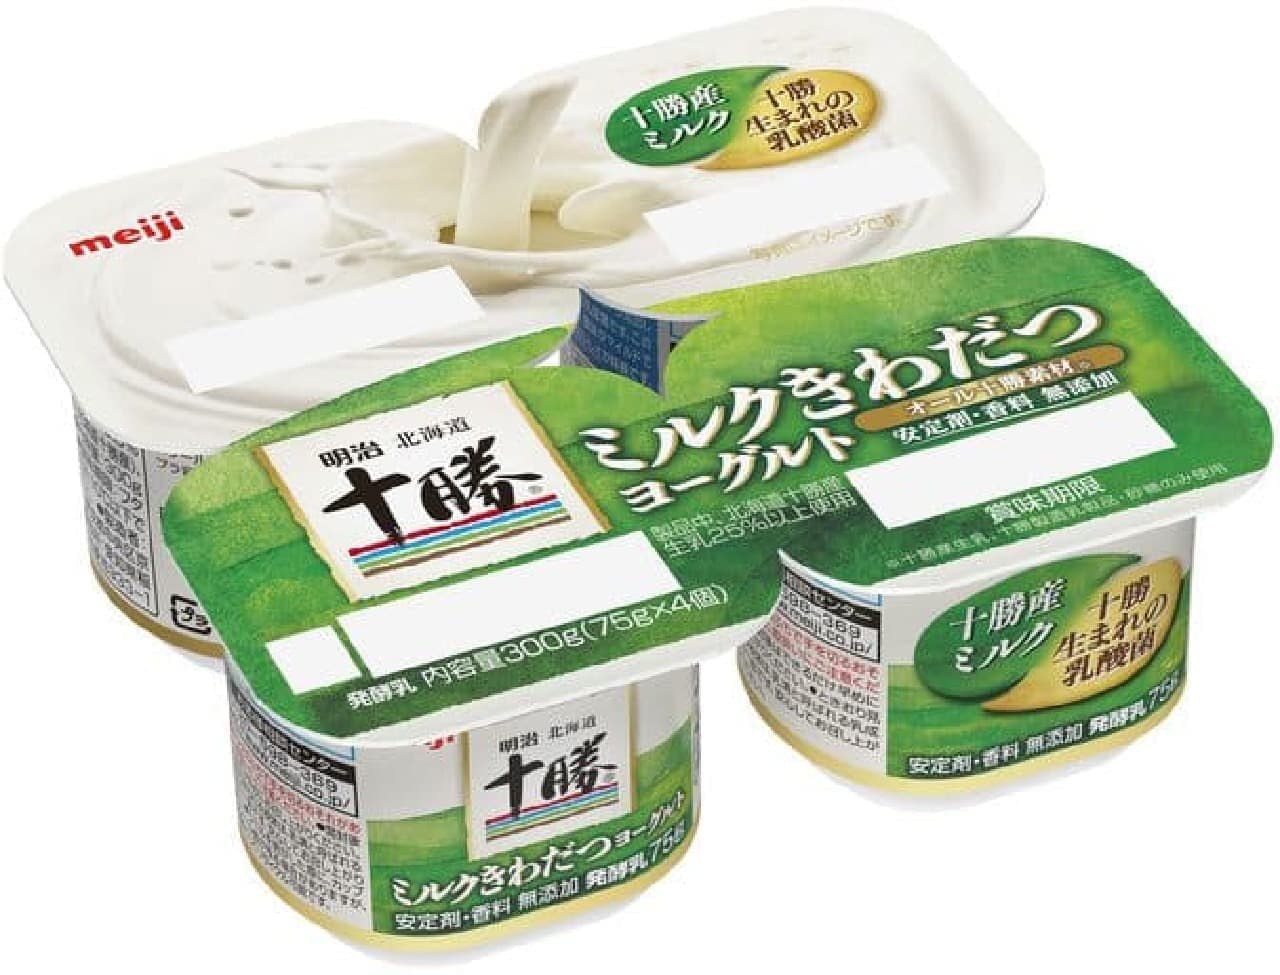 Meiji "Meiji Hokkaido Tokachi Milk Kiwabutsu Yogurt